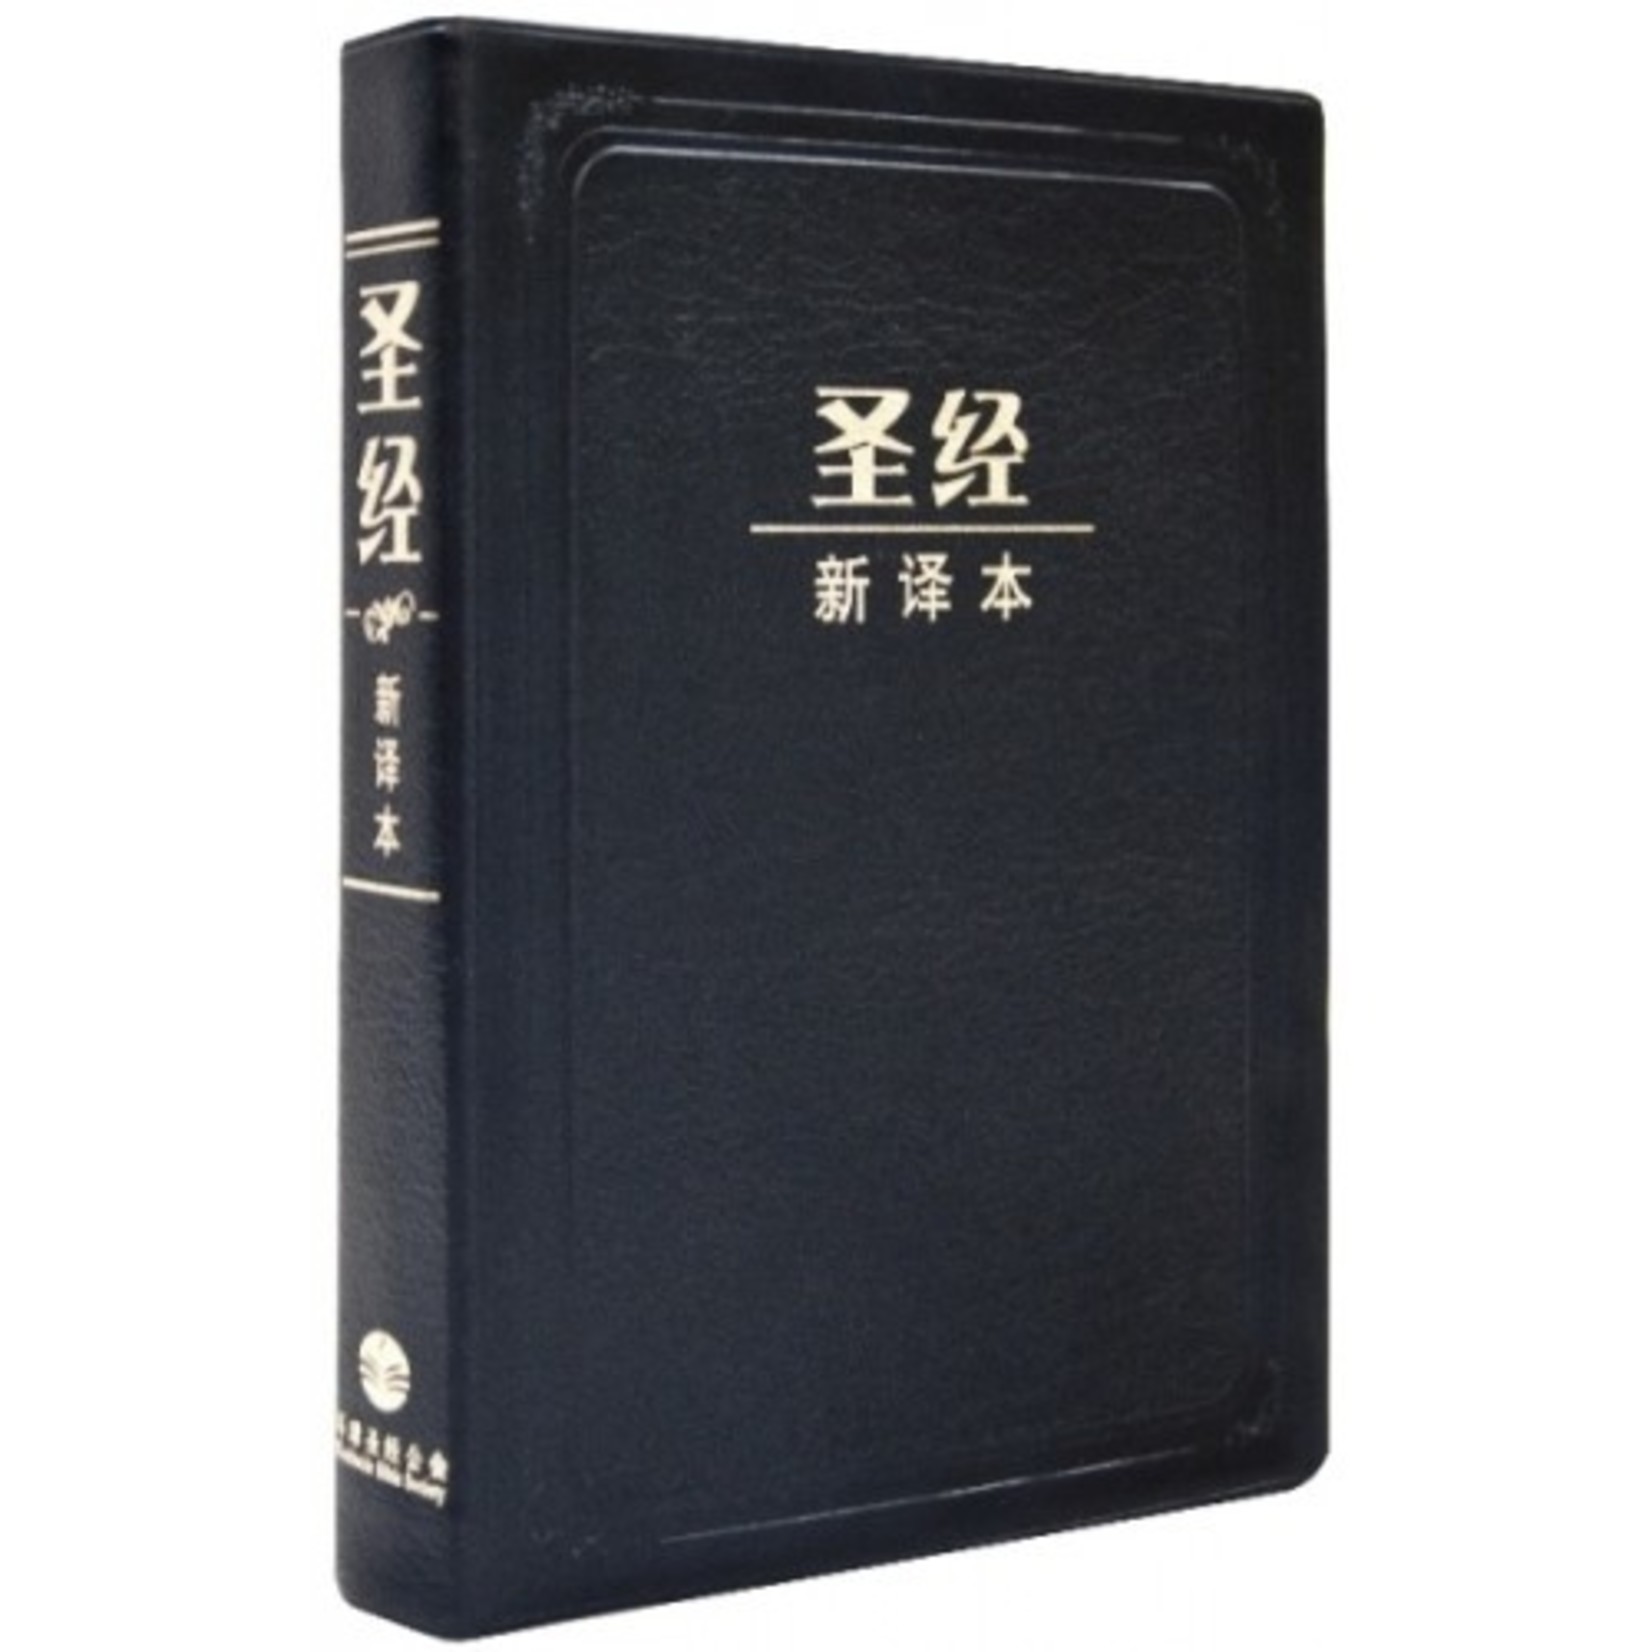 環球聖經公會 The Worldwide Bible Society 聖經新譯本．中型裝．黑色仿皮白邊．簡體